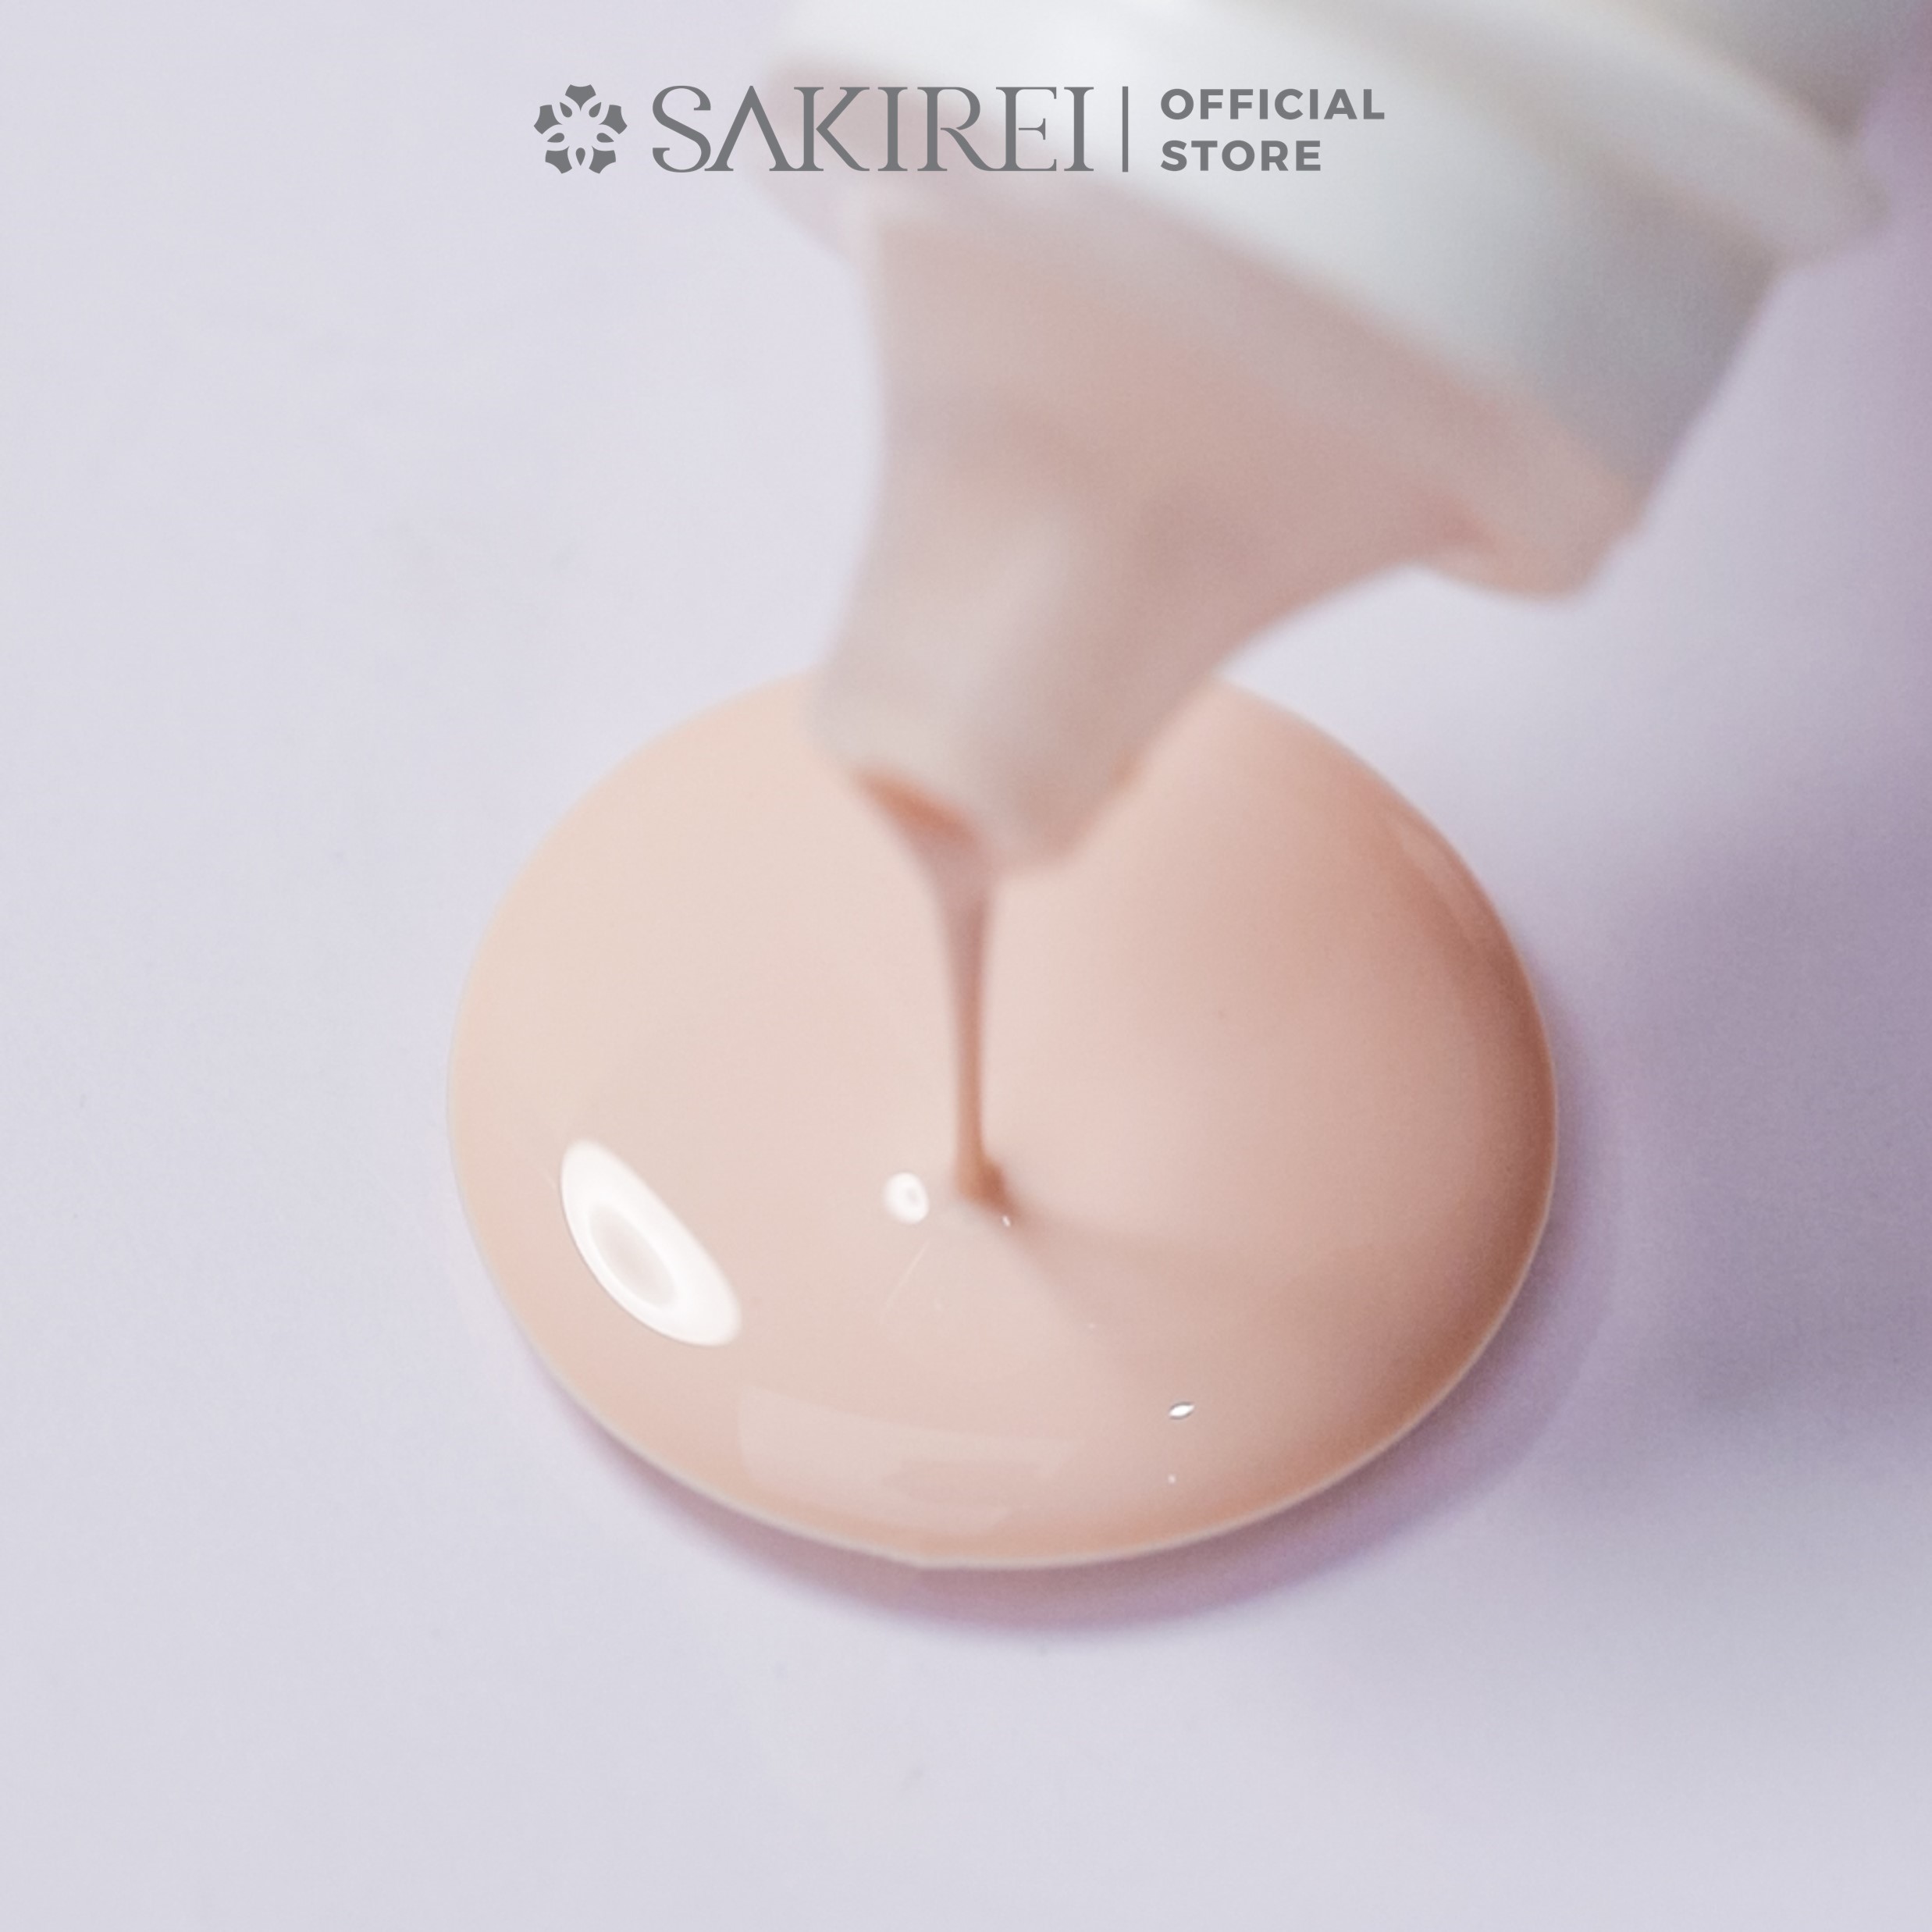 Bộ sản phẩm chăm sóc phục hồi da Sakirei NMN Revitalize từ Nhật Bản